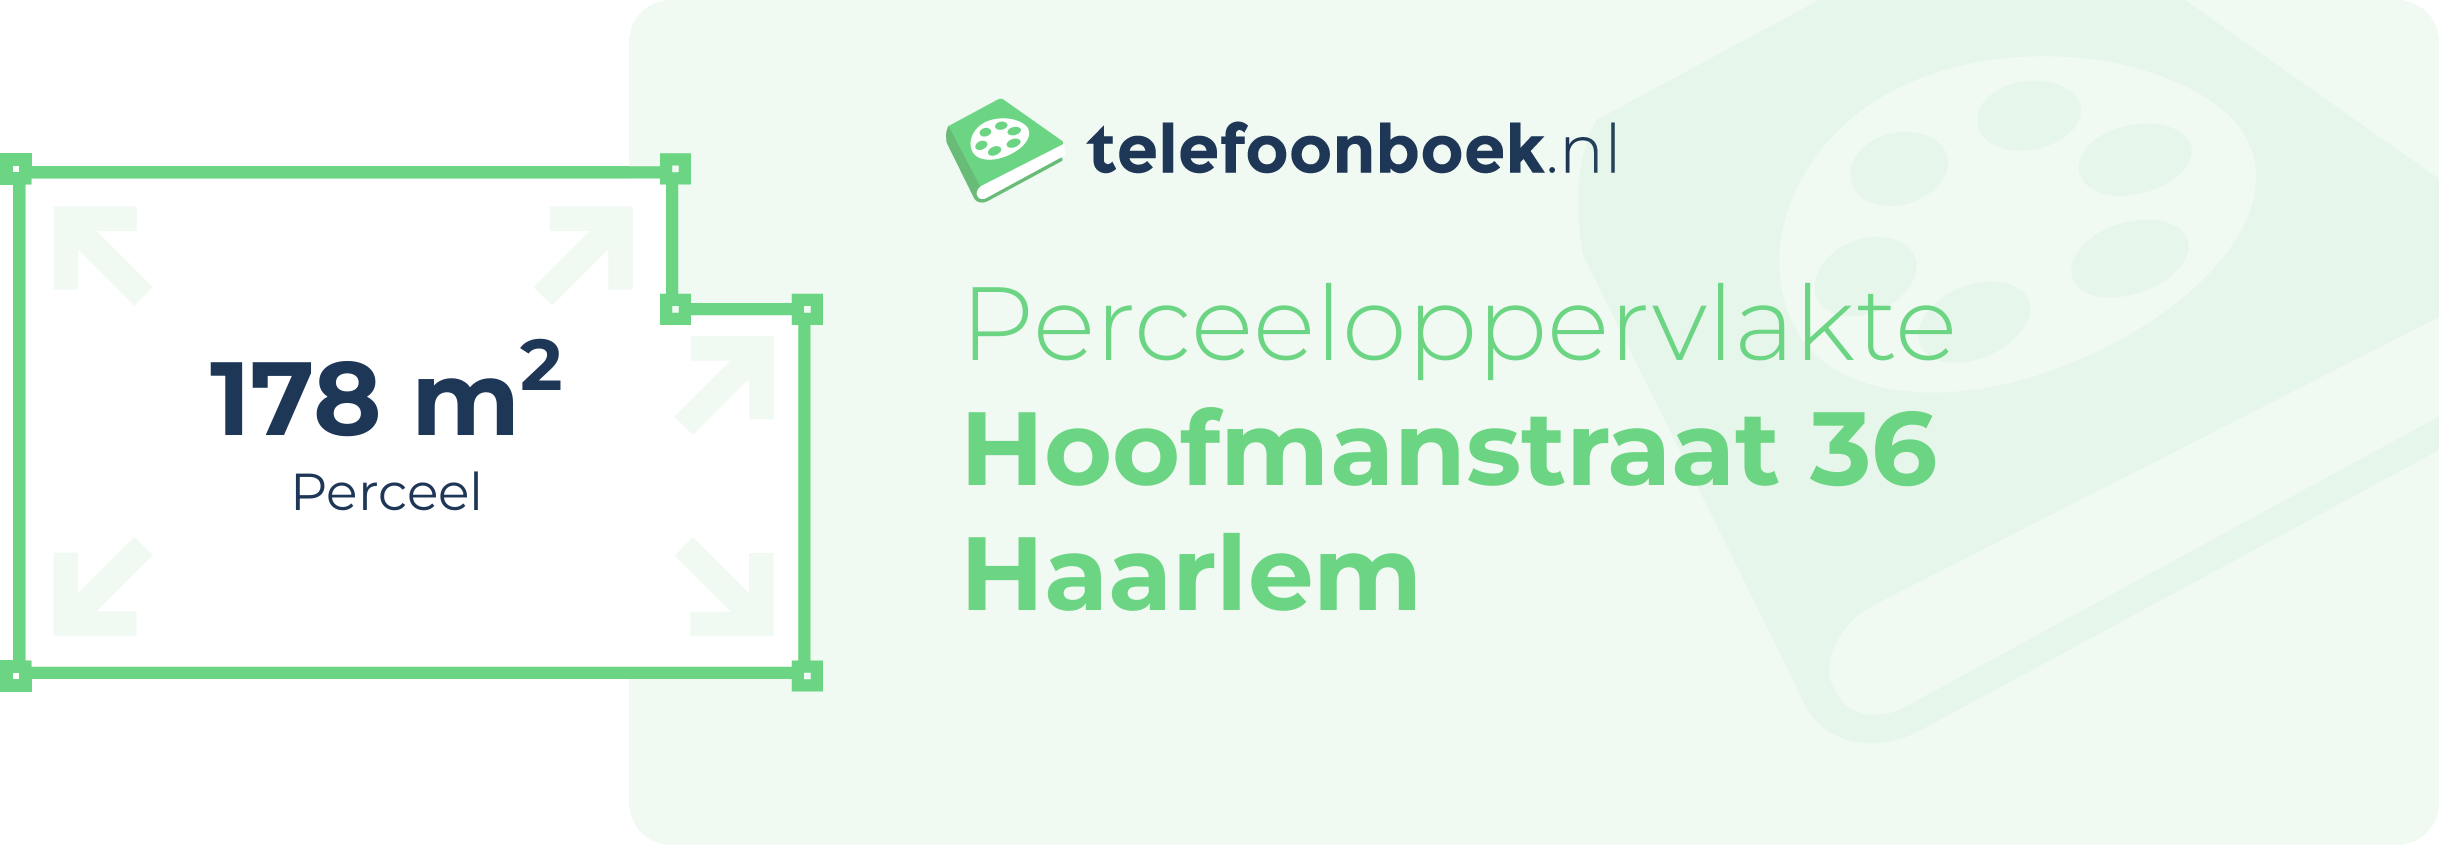 Perceeloppervlakte Hoofmanstraat 36 Haarlem